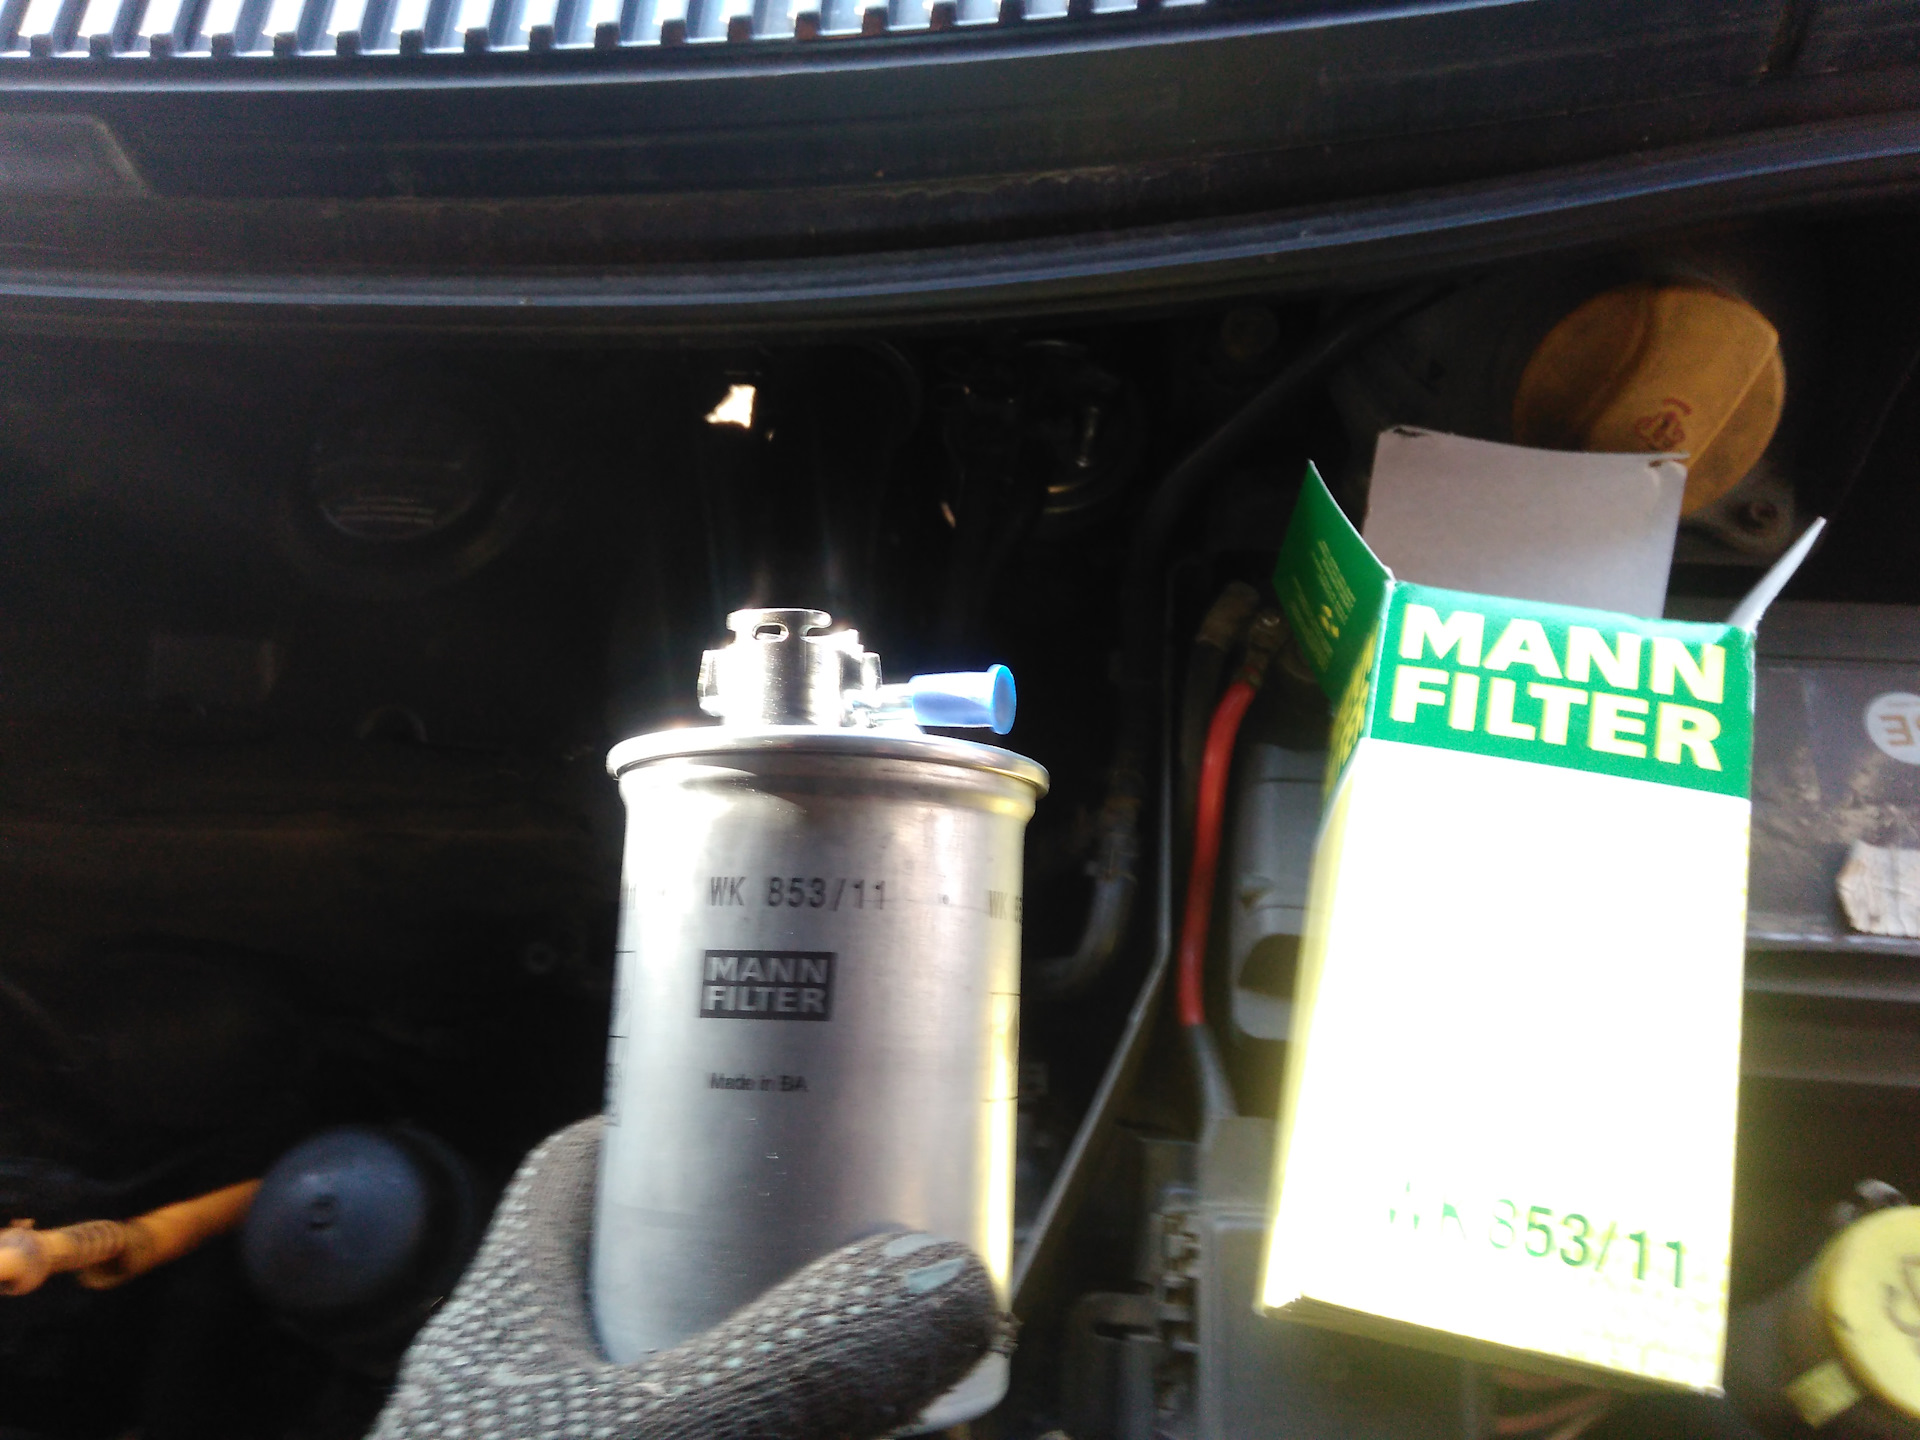 Топливный фильтр форд транзит 2.2 дизель. Фильтр топливный Форд галакси 2005. Топливный фильтр Форд галакси 2005 бензин 2 литра. Фильтр топливный Форд галакси дизель. Топливный фильтр Форд Транзит 2.2 Манн фильтр.